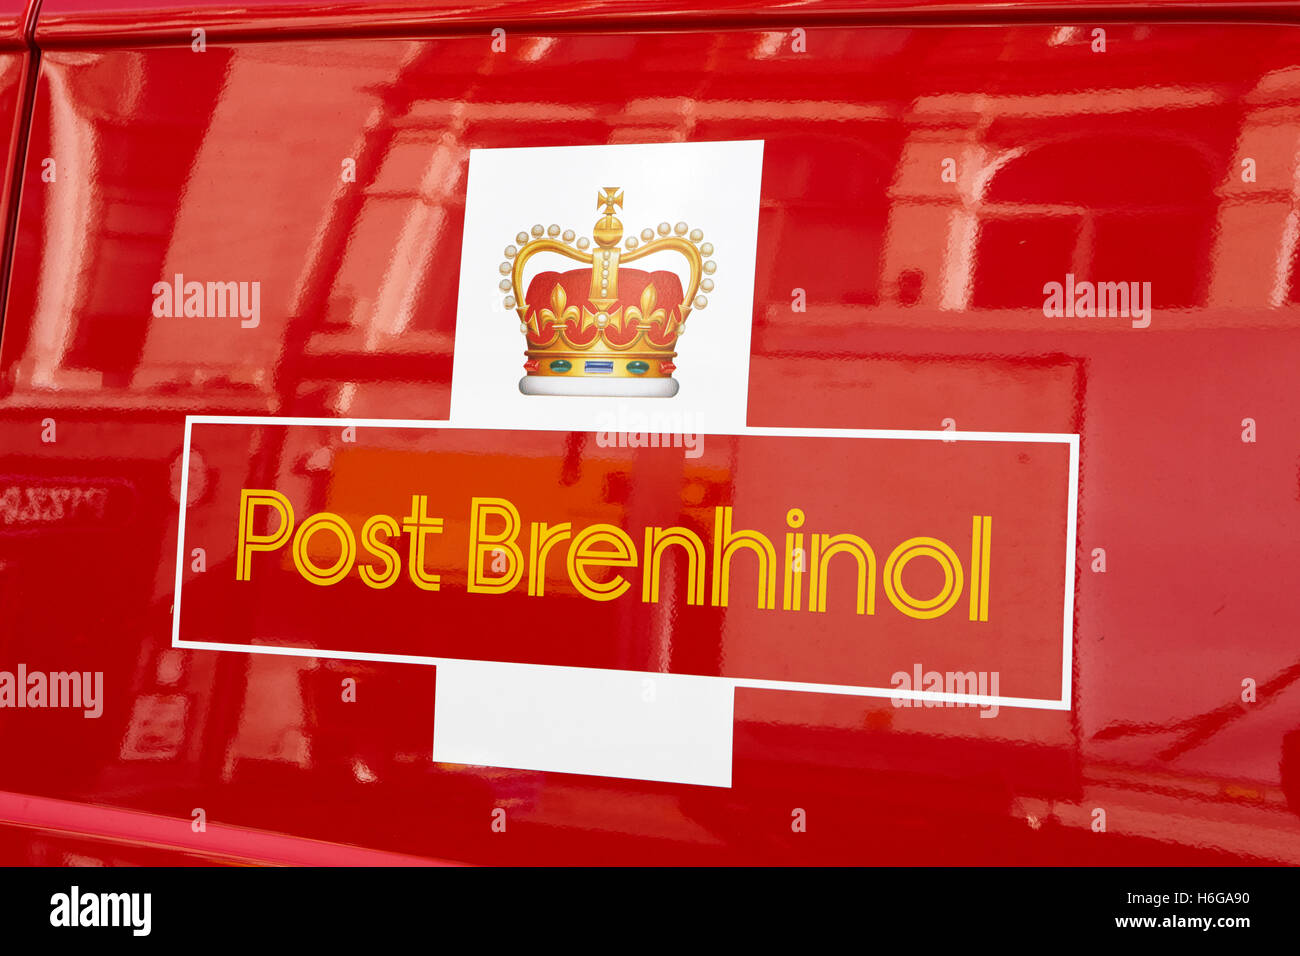 Königliche Post Lieferwagen mit walisischen Post Brenhinol Livree Cardiff Wales Großbritannien Stockfoto